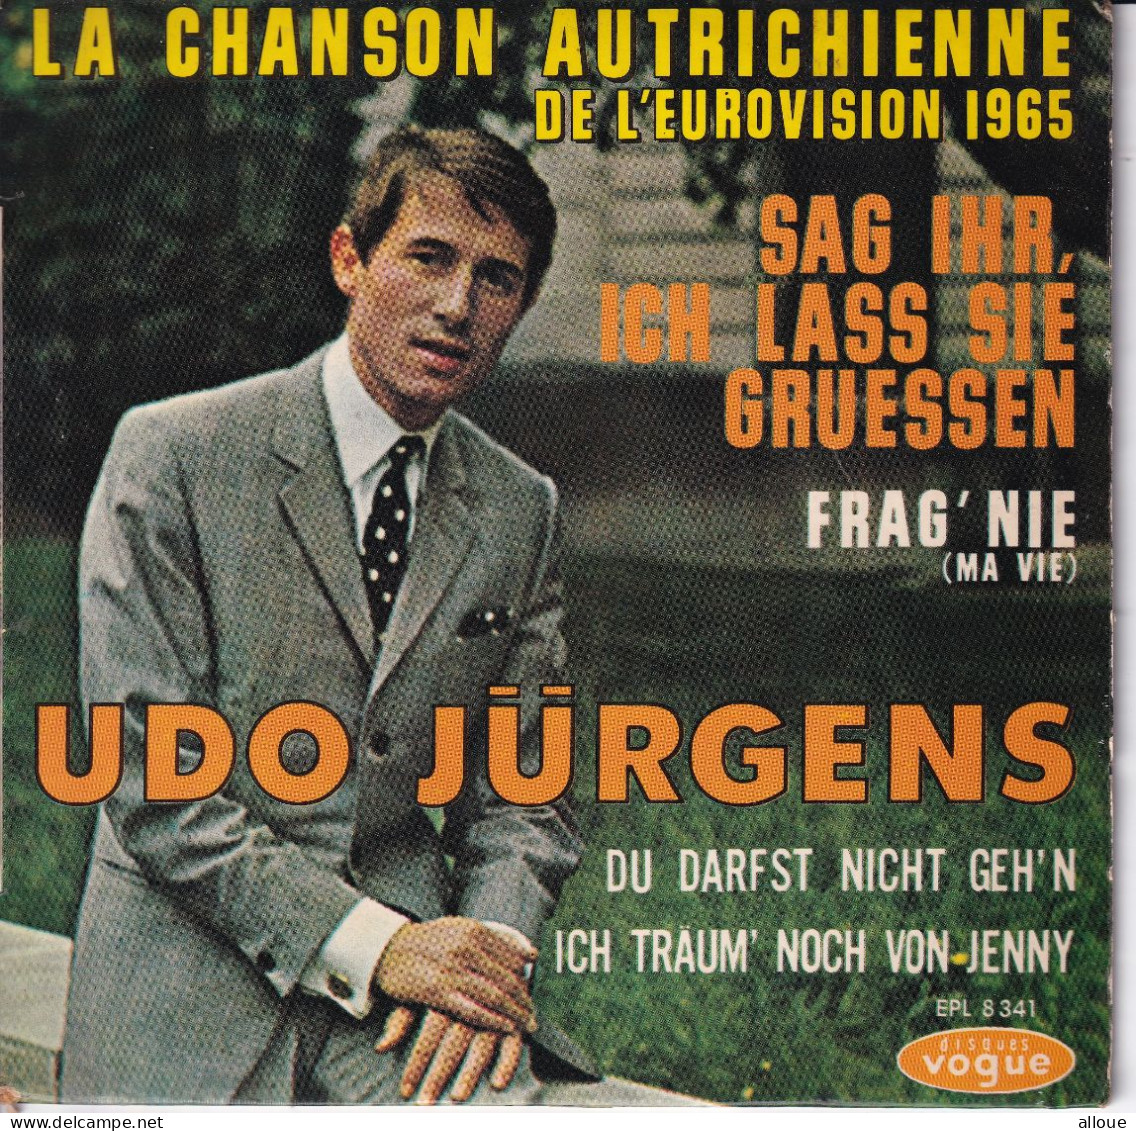 UDO JURGENS - FR EP EUROVISION 1965  - SAG IHR, ICH LASS SIE GRUESSEN + 3 - Sonstige - Deutsche Musik